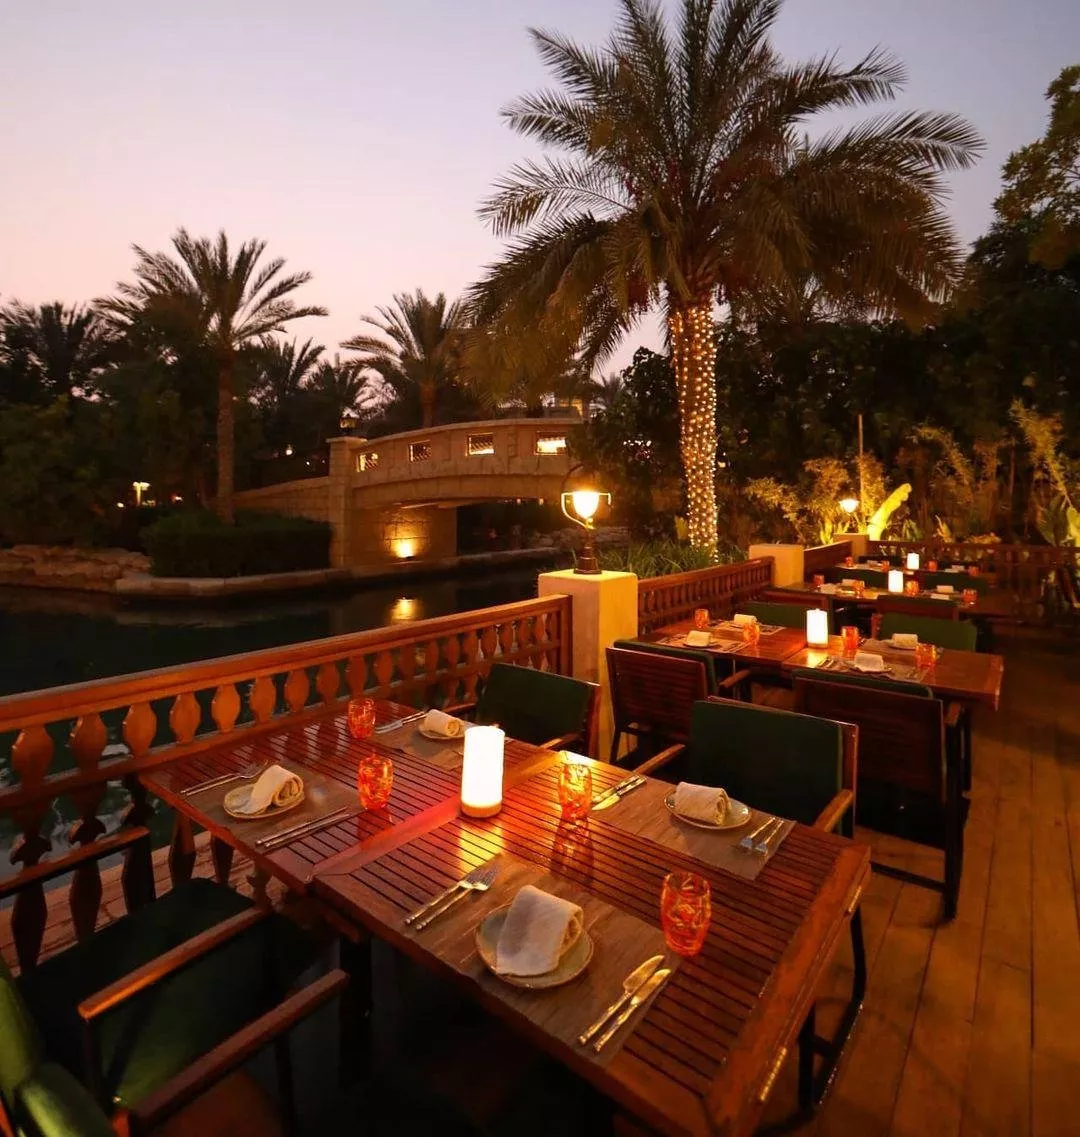 10 من أفضل المطاعم الرومنسية في دبي، لقضاء وقت مميّز مع زوجكِ